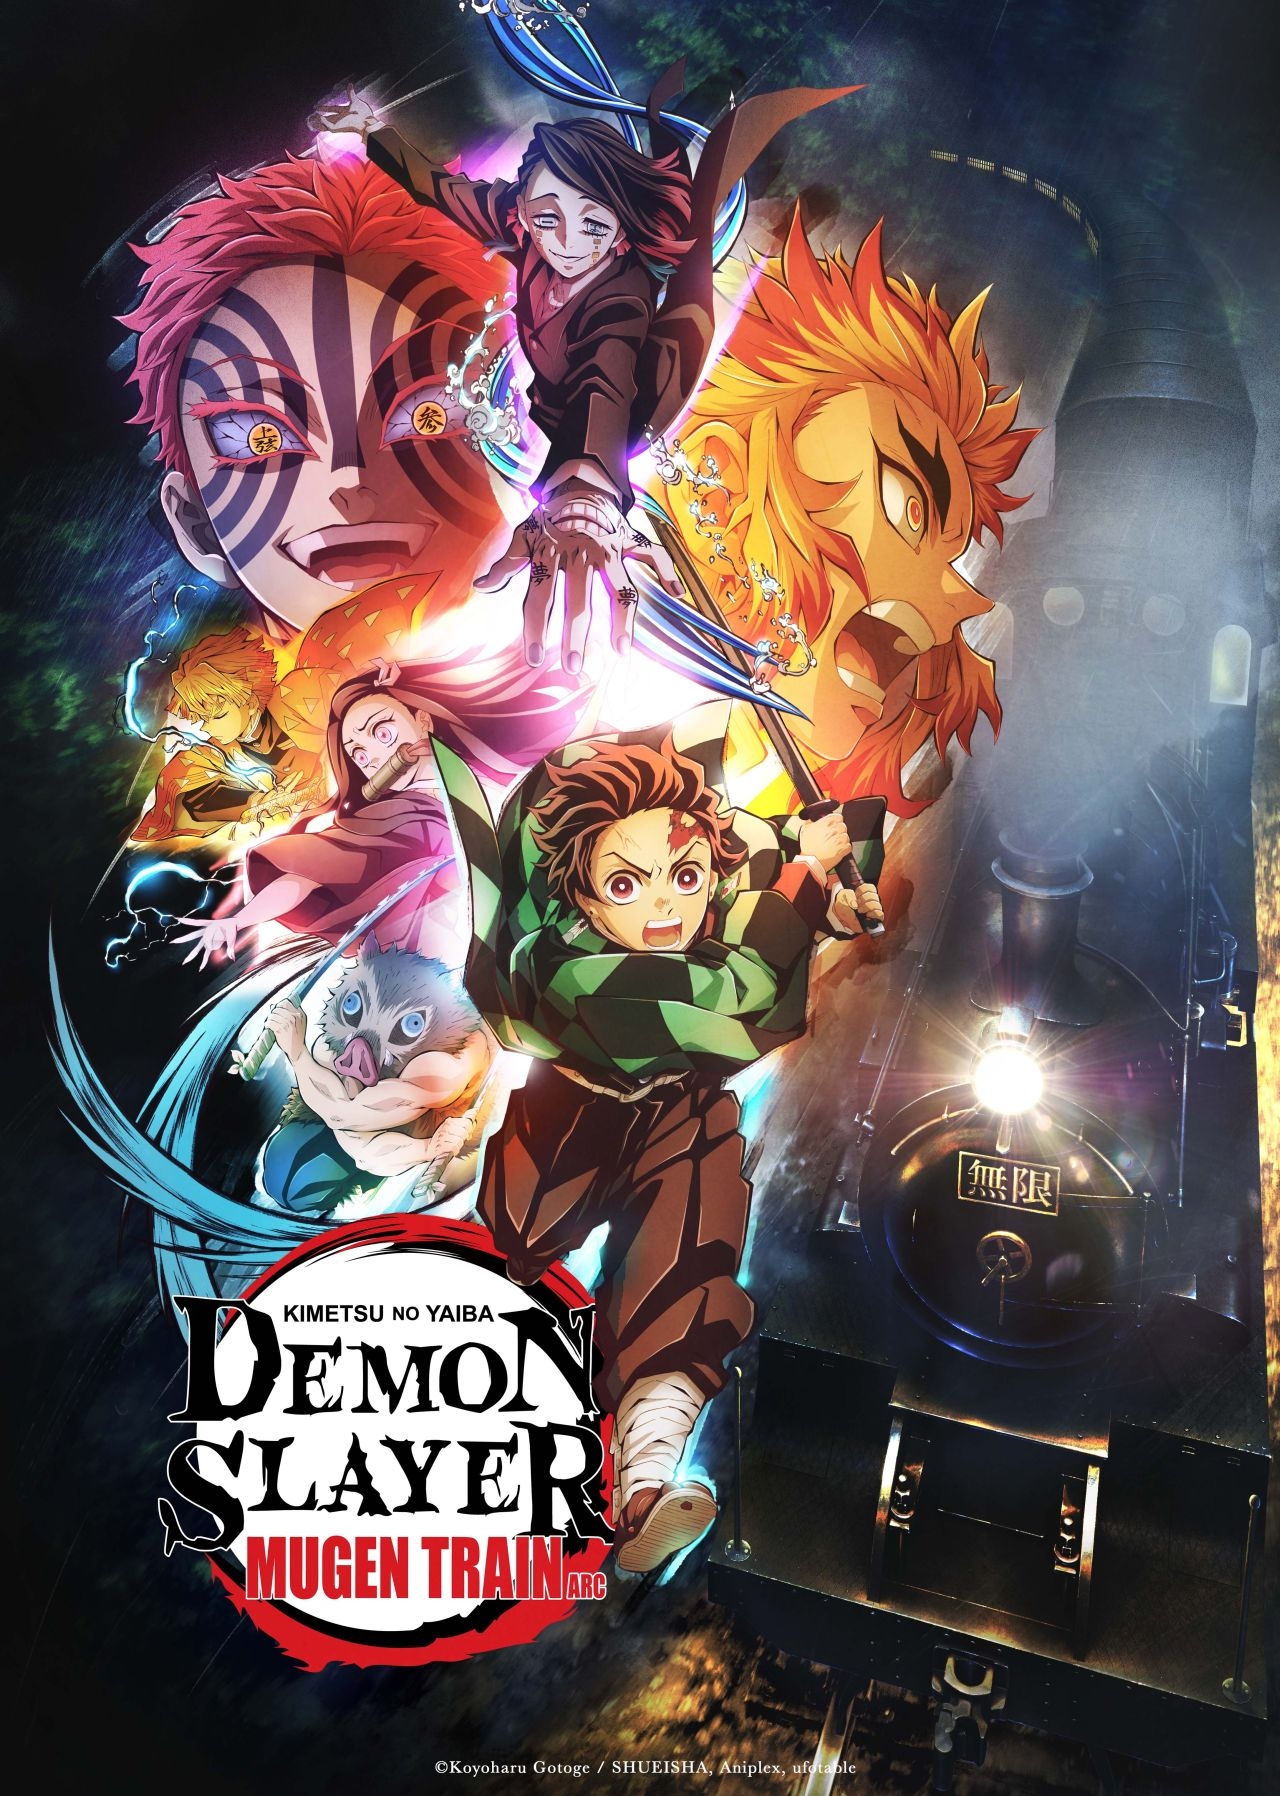 Watch Demon Slayer: Kimetsu no Yaiba season 1 episode 6 streaming